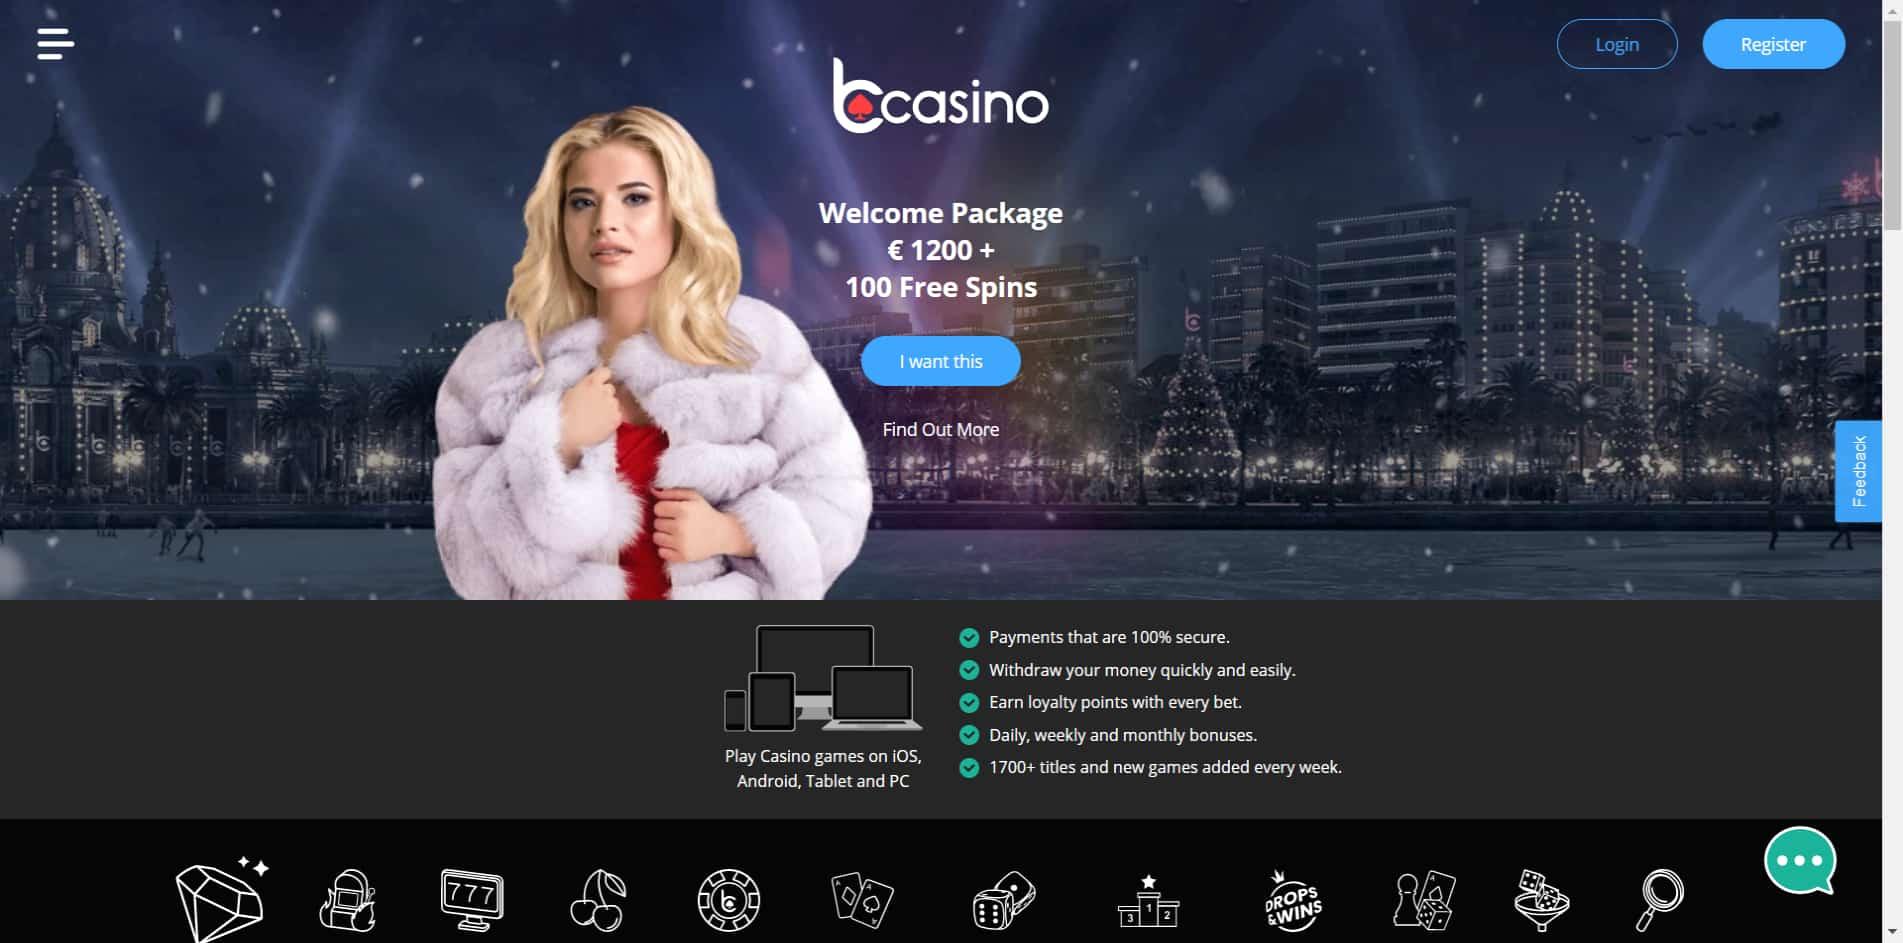 b casino homepage